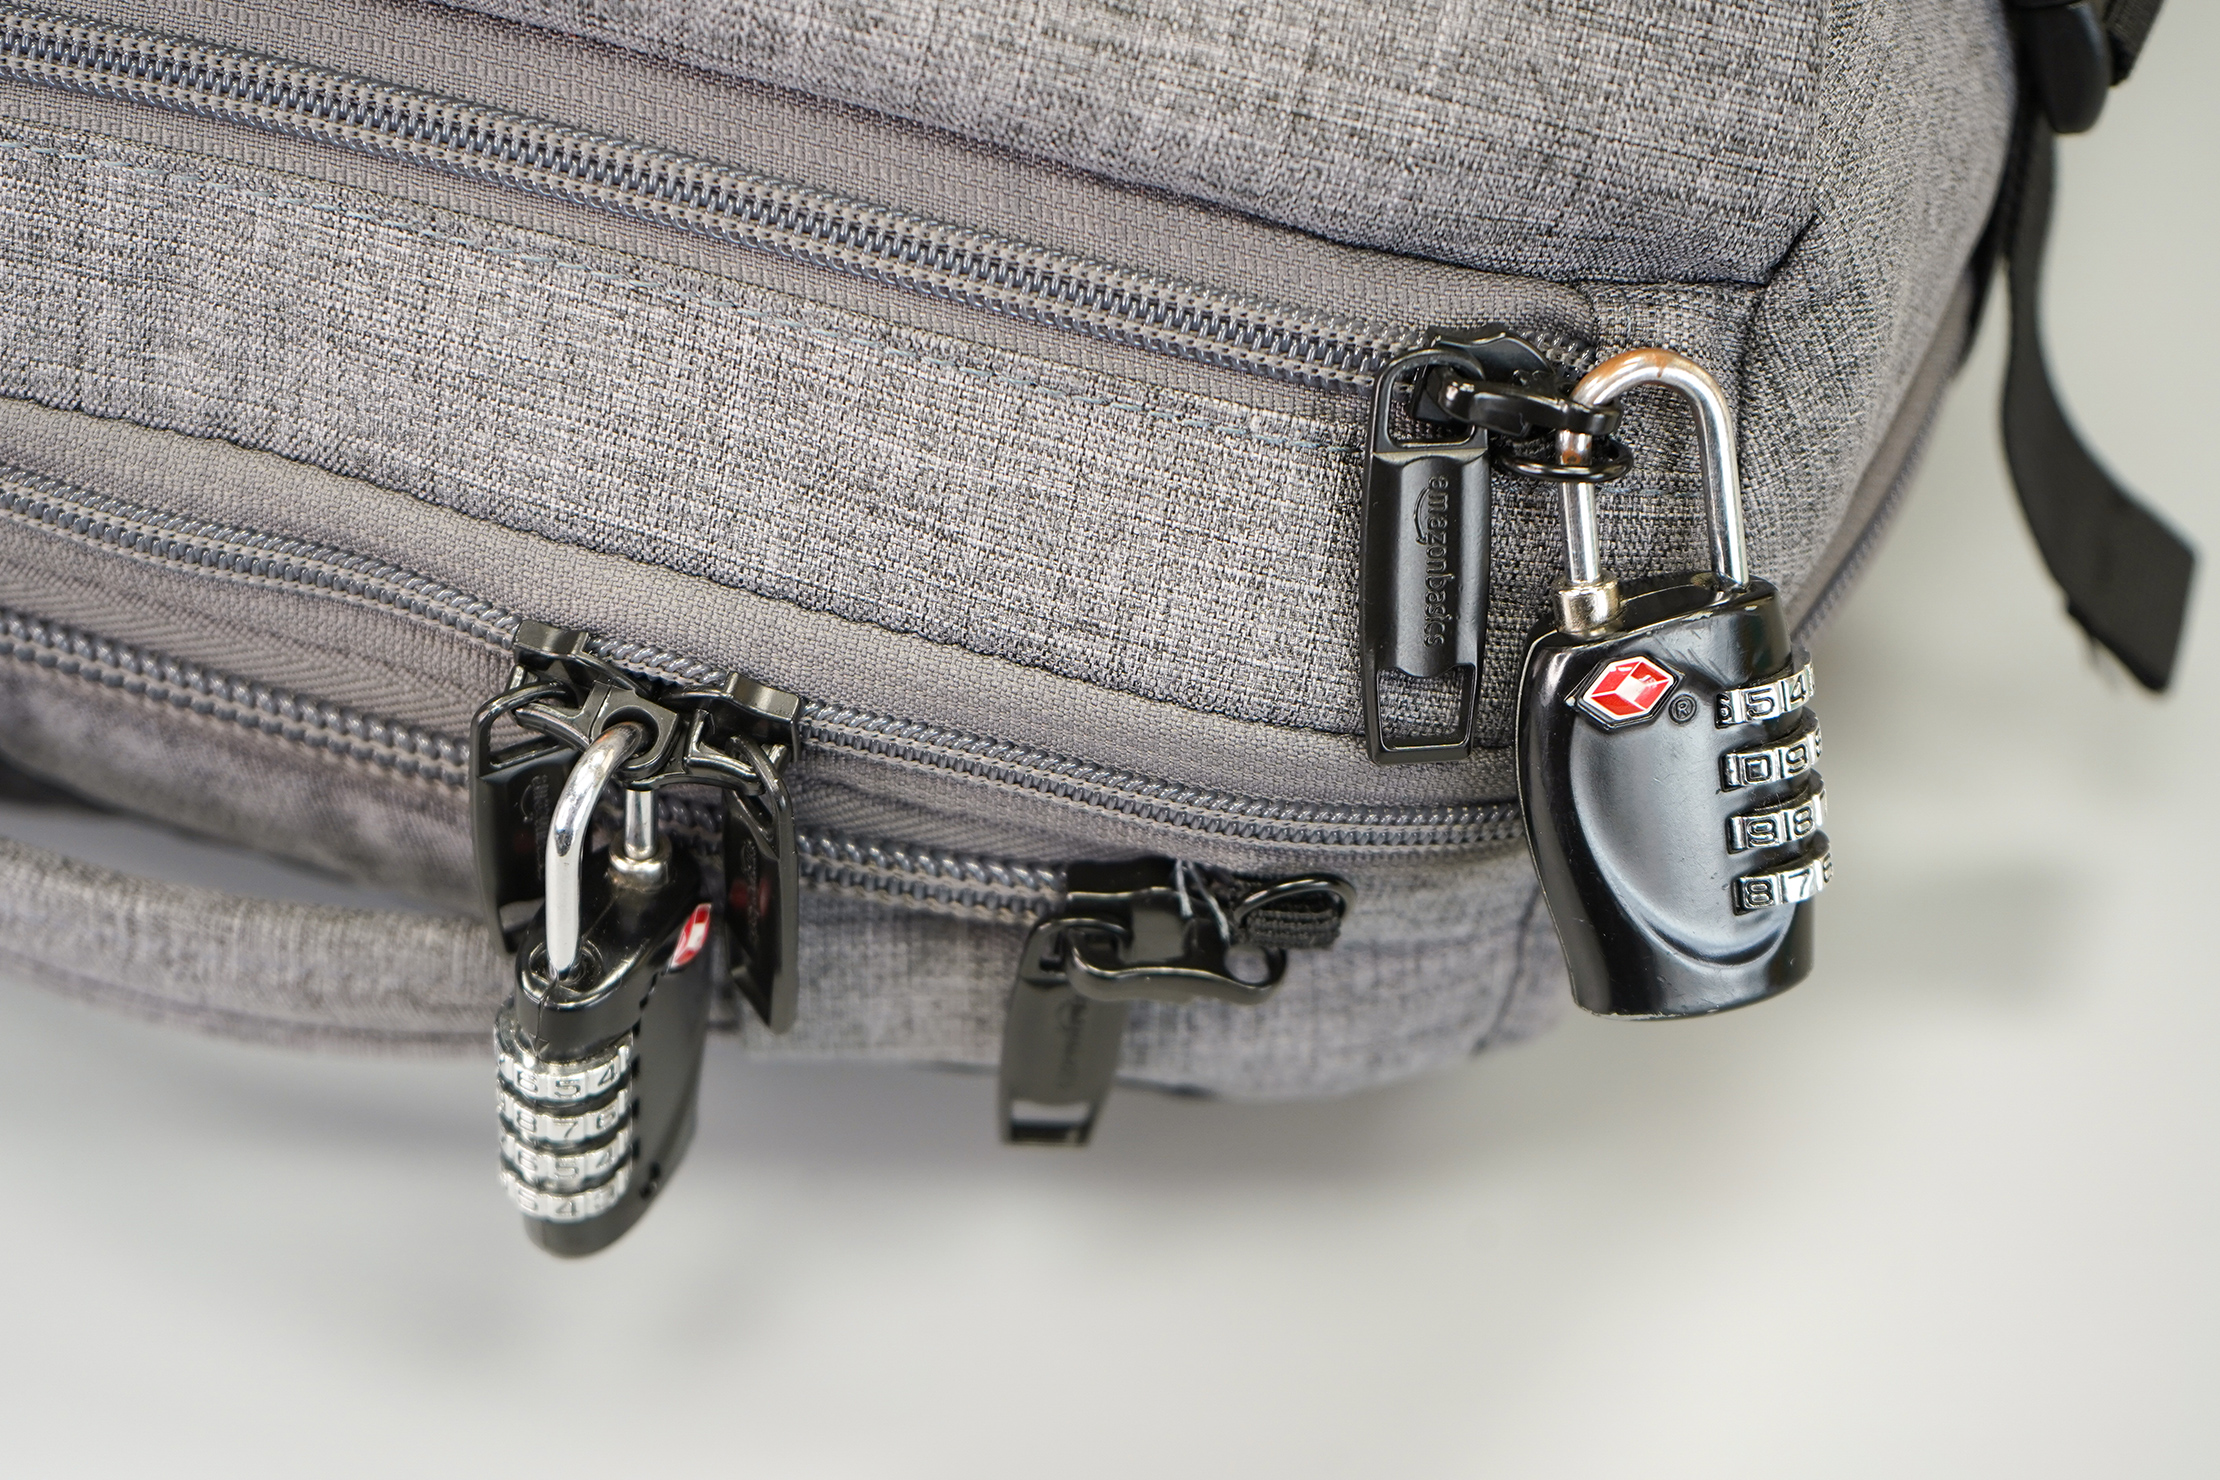 AmazonBasics Slim Travel Backpack Weekender Lockable Zippers